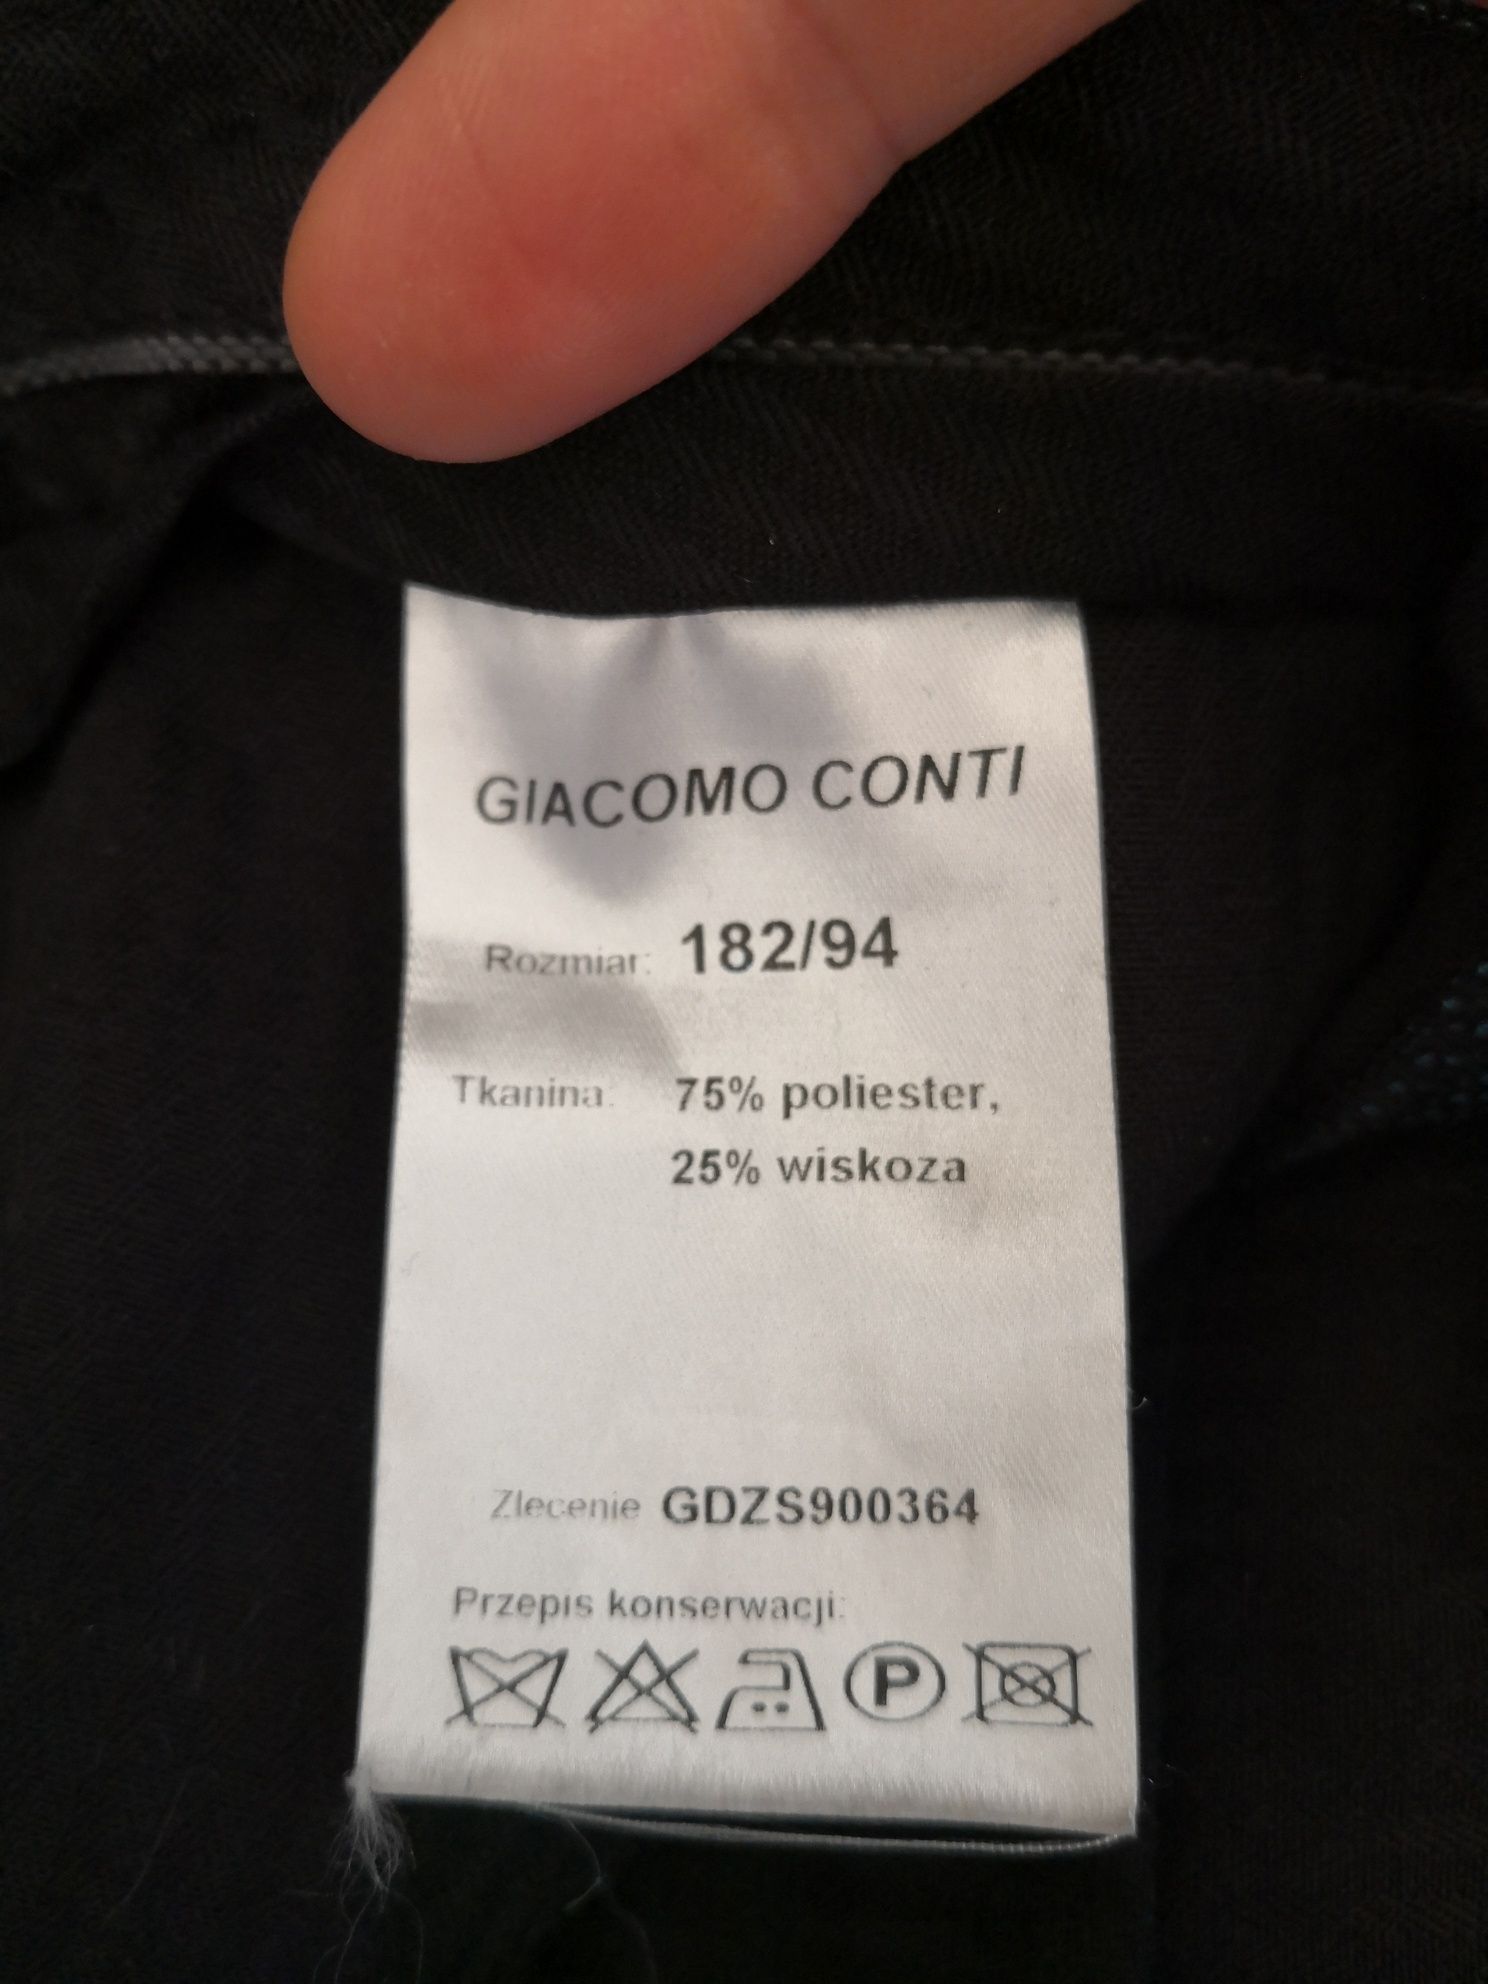 Spodnie garniturowe Giacomo Conti r.182/94 butelkowa zieleń